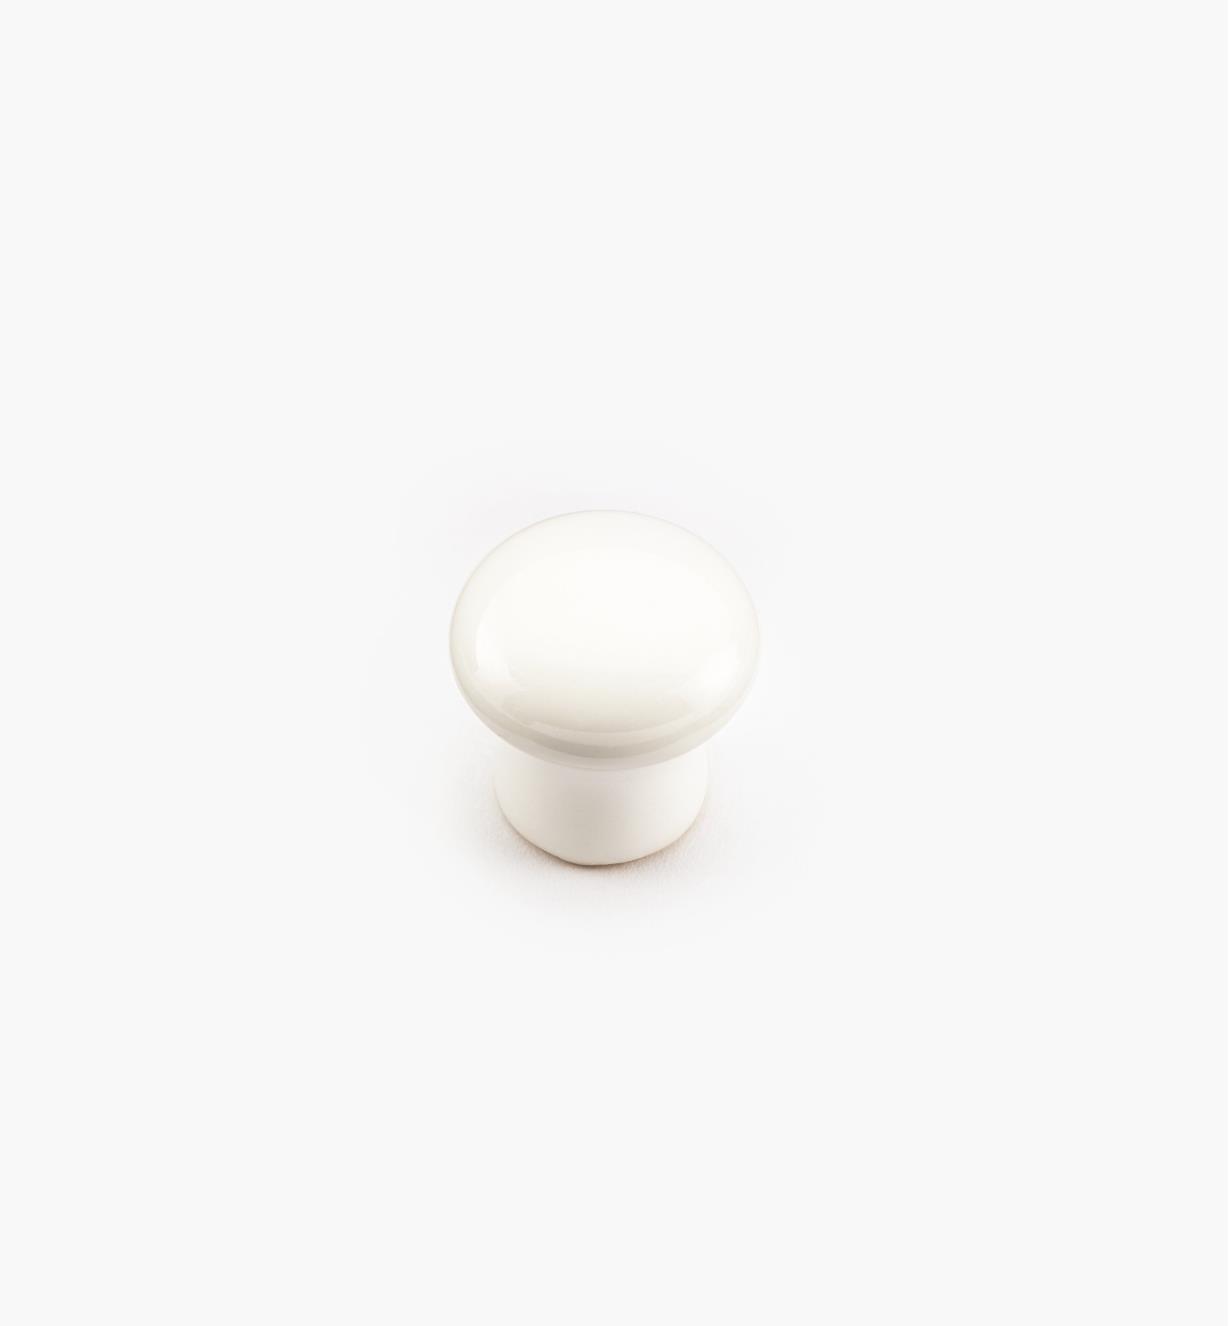 00W2801 - Bouton en céramique, blanc, 3/4 po x 5/8 po